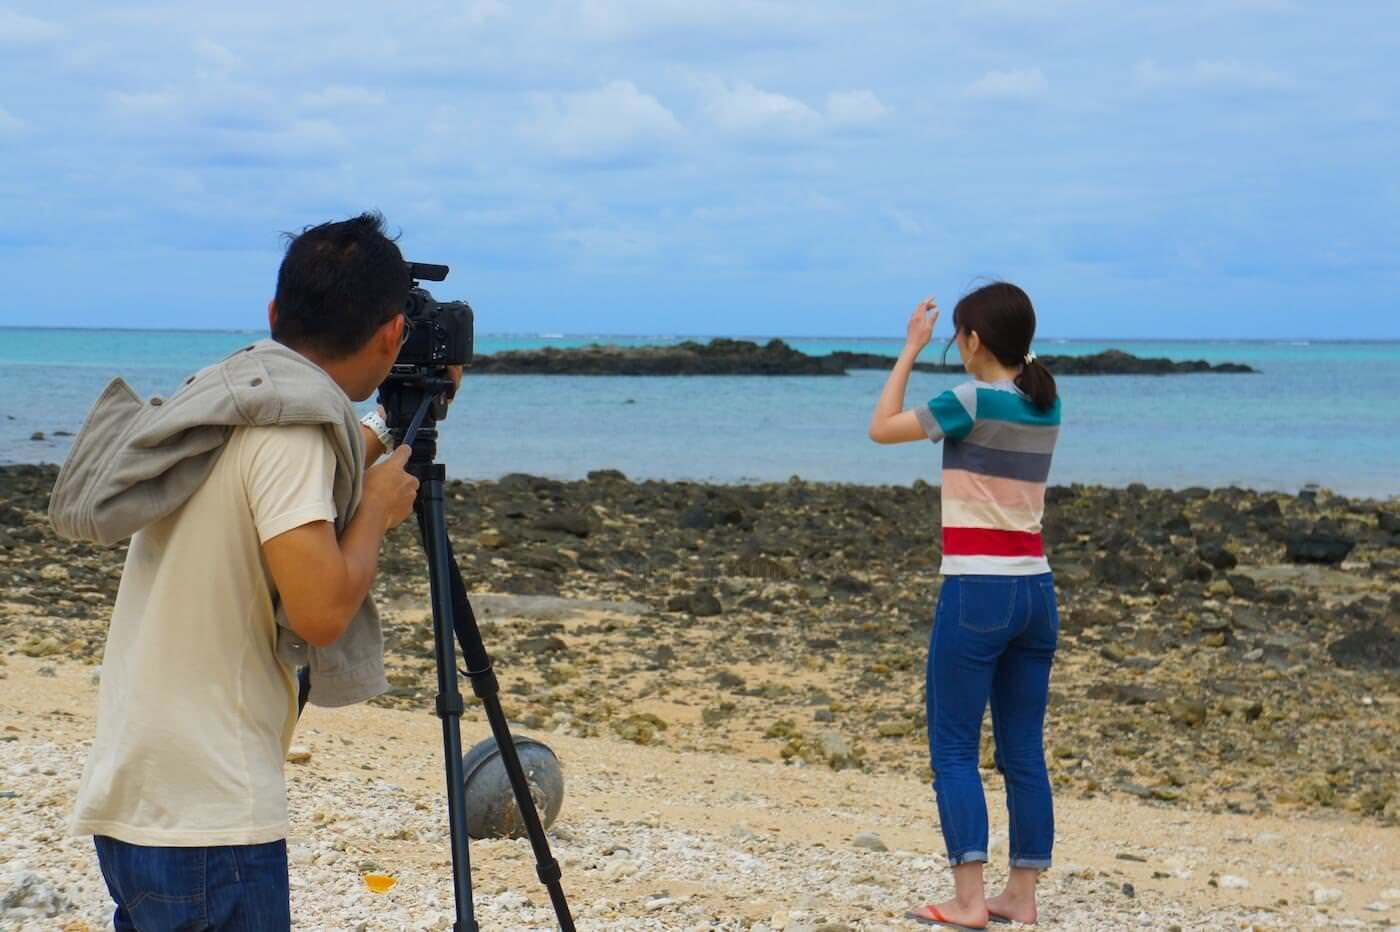 石垣島平野ビーチを撮影するスタッフ